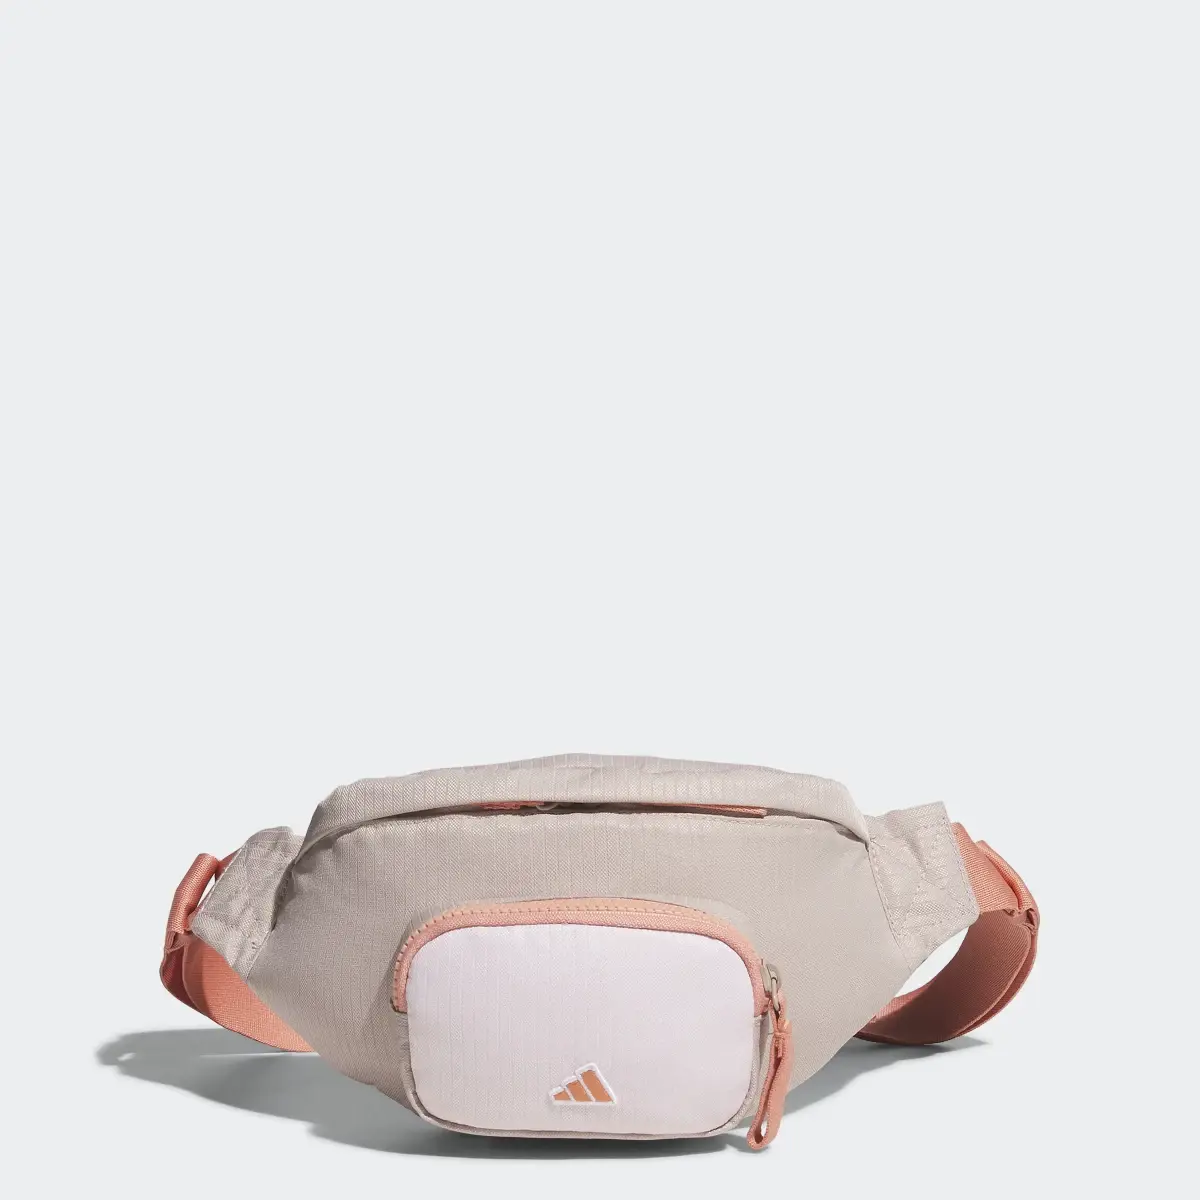 Adidas Waist Golf Bag. 1